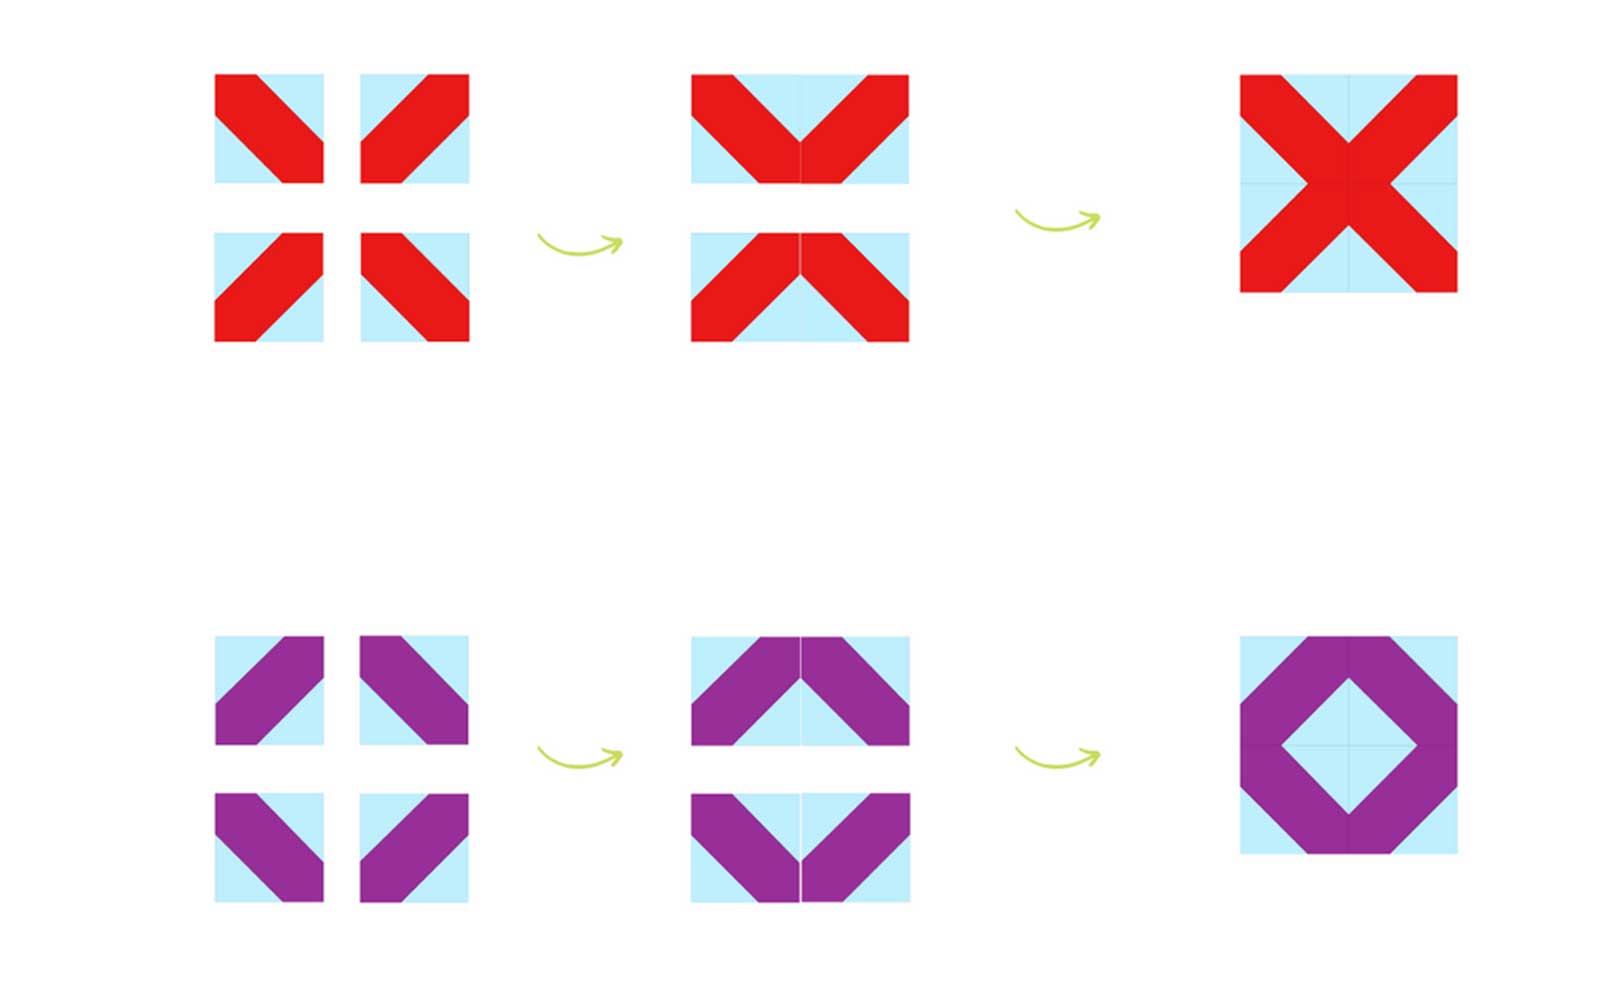 Diagrammes des blocs X rouges et O violets